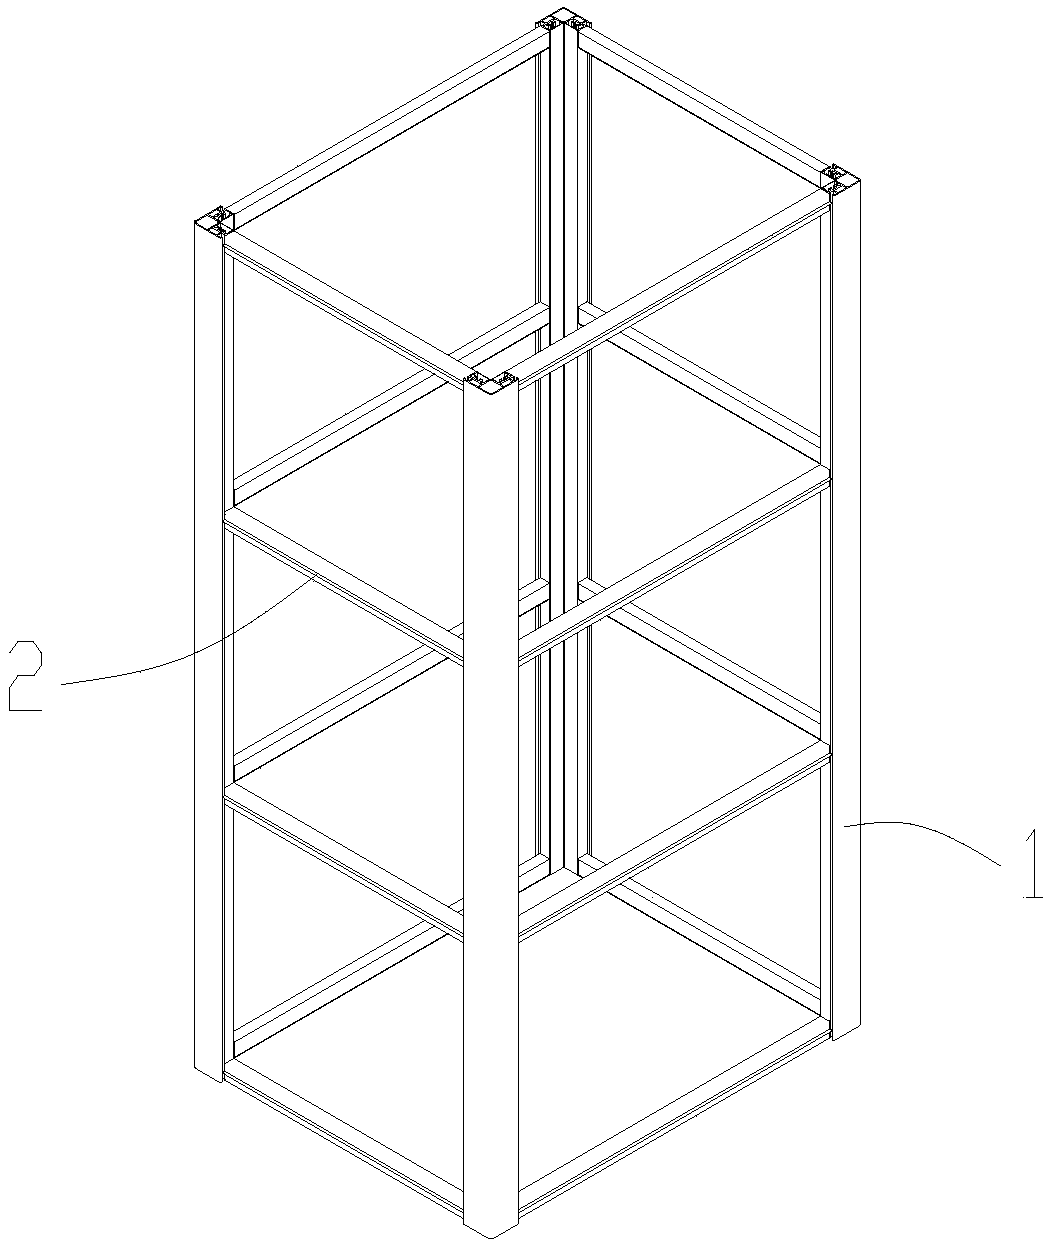 Shaft frame of aluminum alloy sightseeing elevator